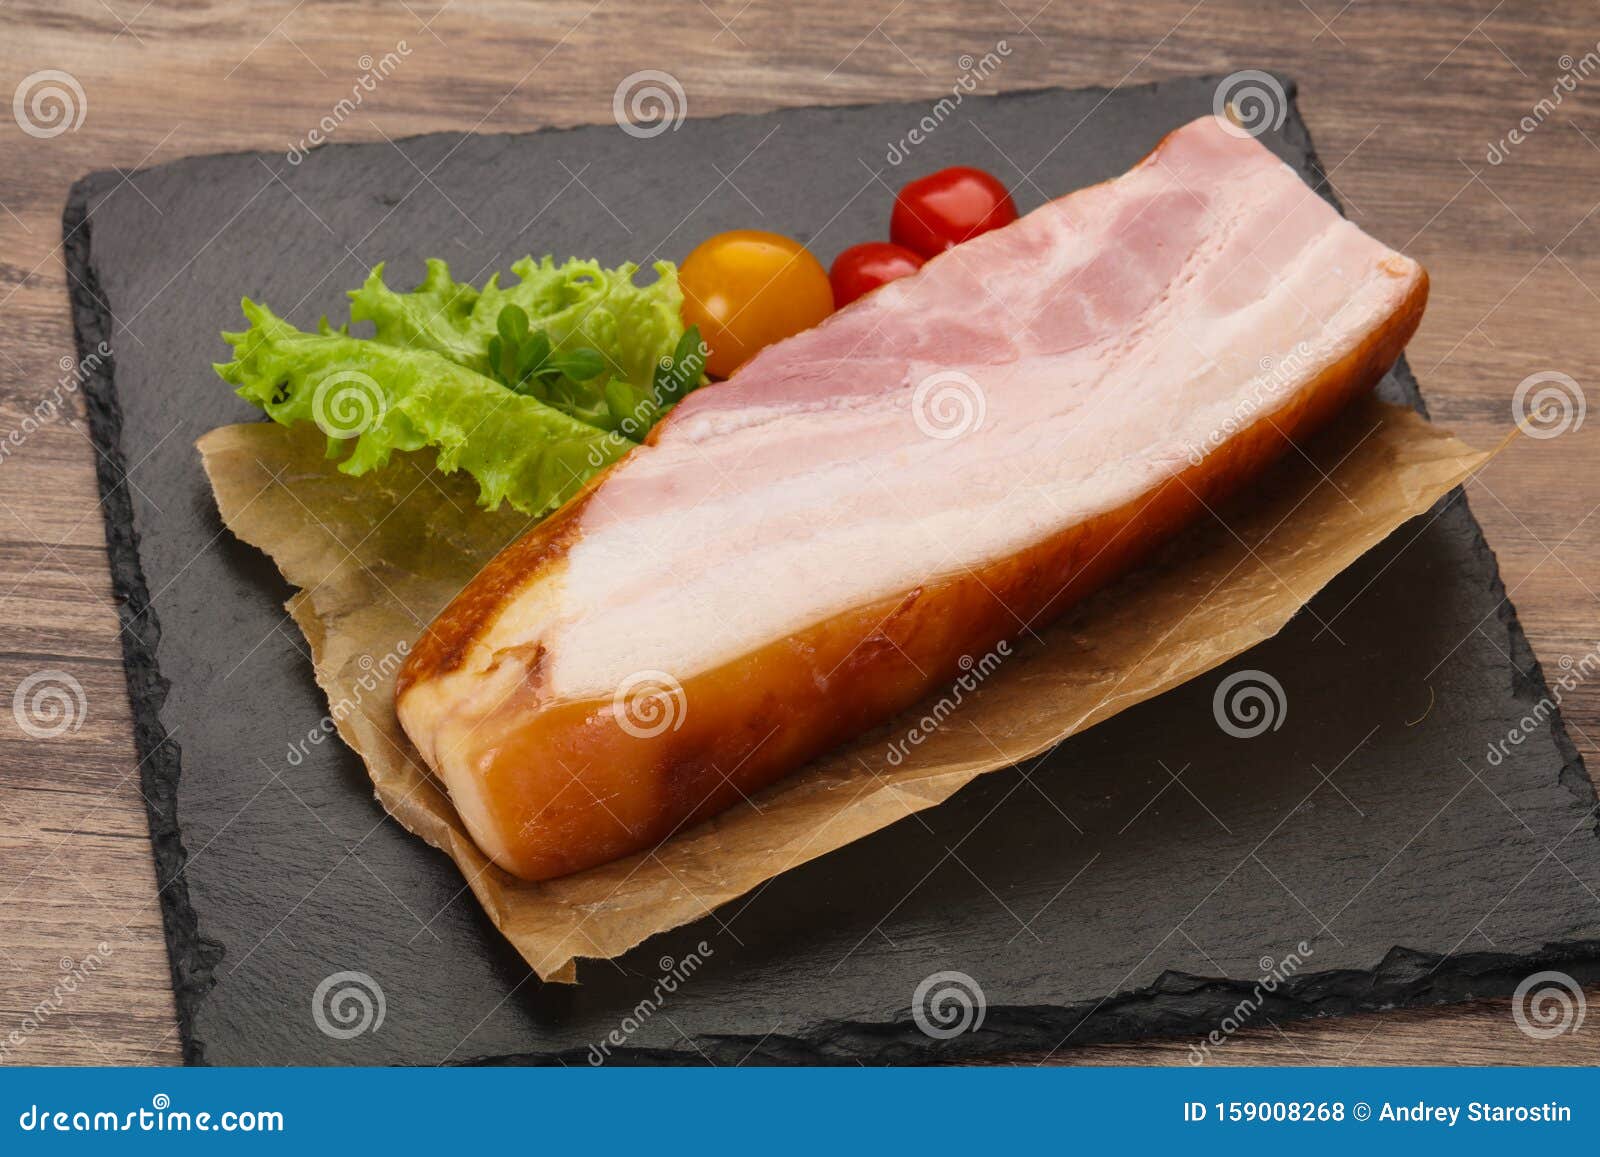 一块熏猪肉肋骨 库存照片. 图片 包括有 新鲜, 贝多芬, 对象, 烹调, 骨肉, 烹饪, 膳食, 干燥 - 165715586